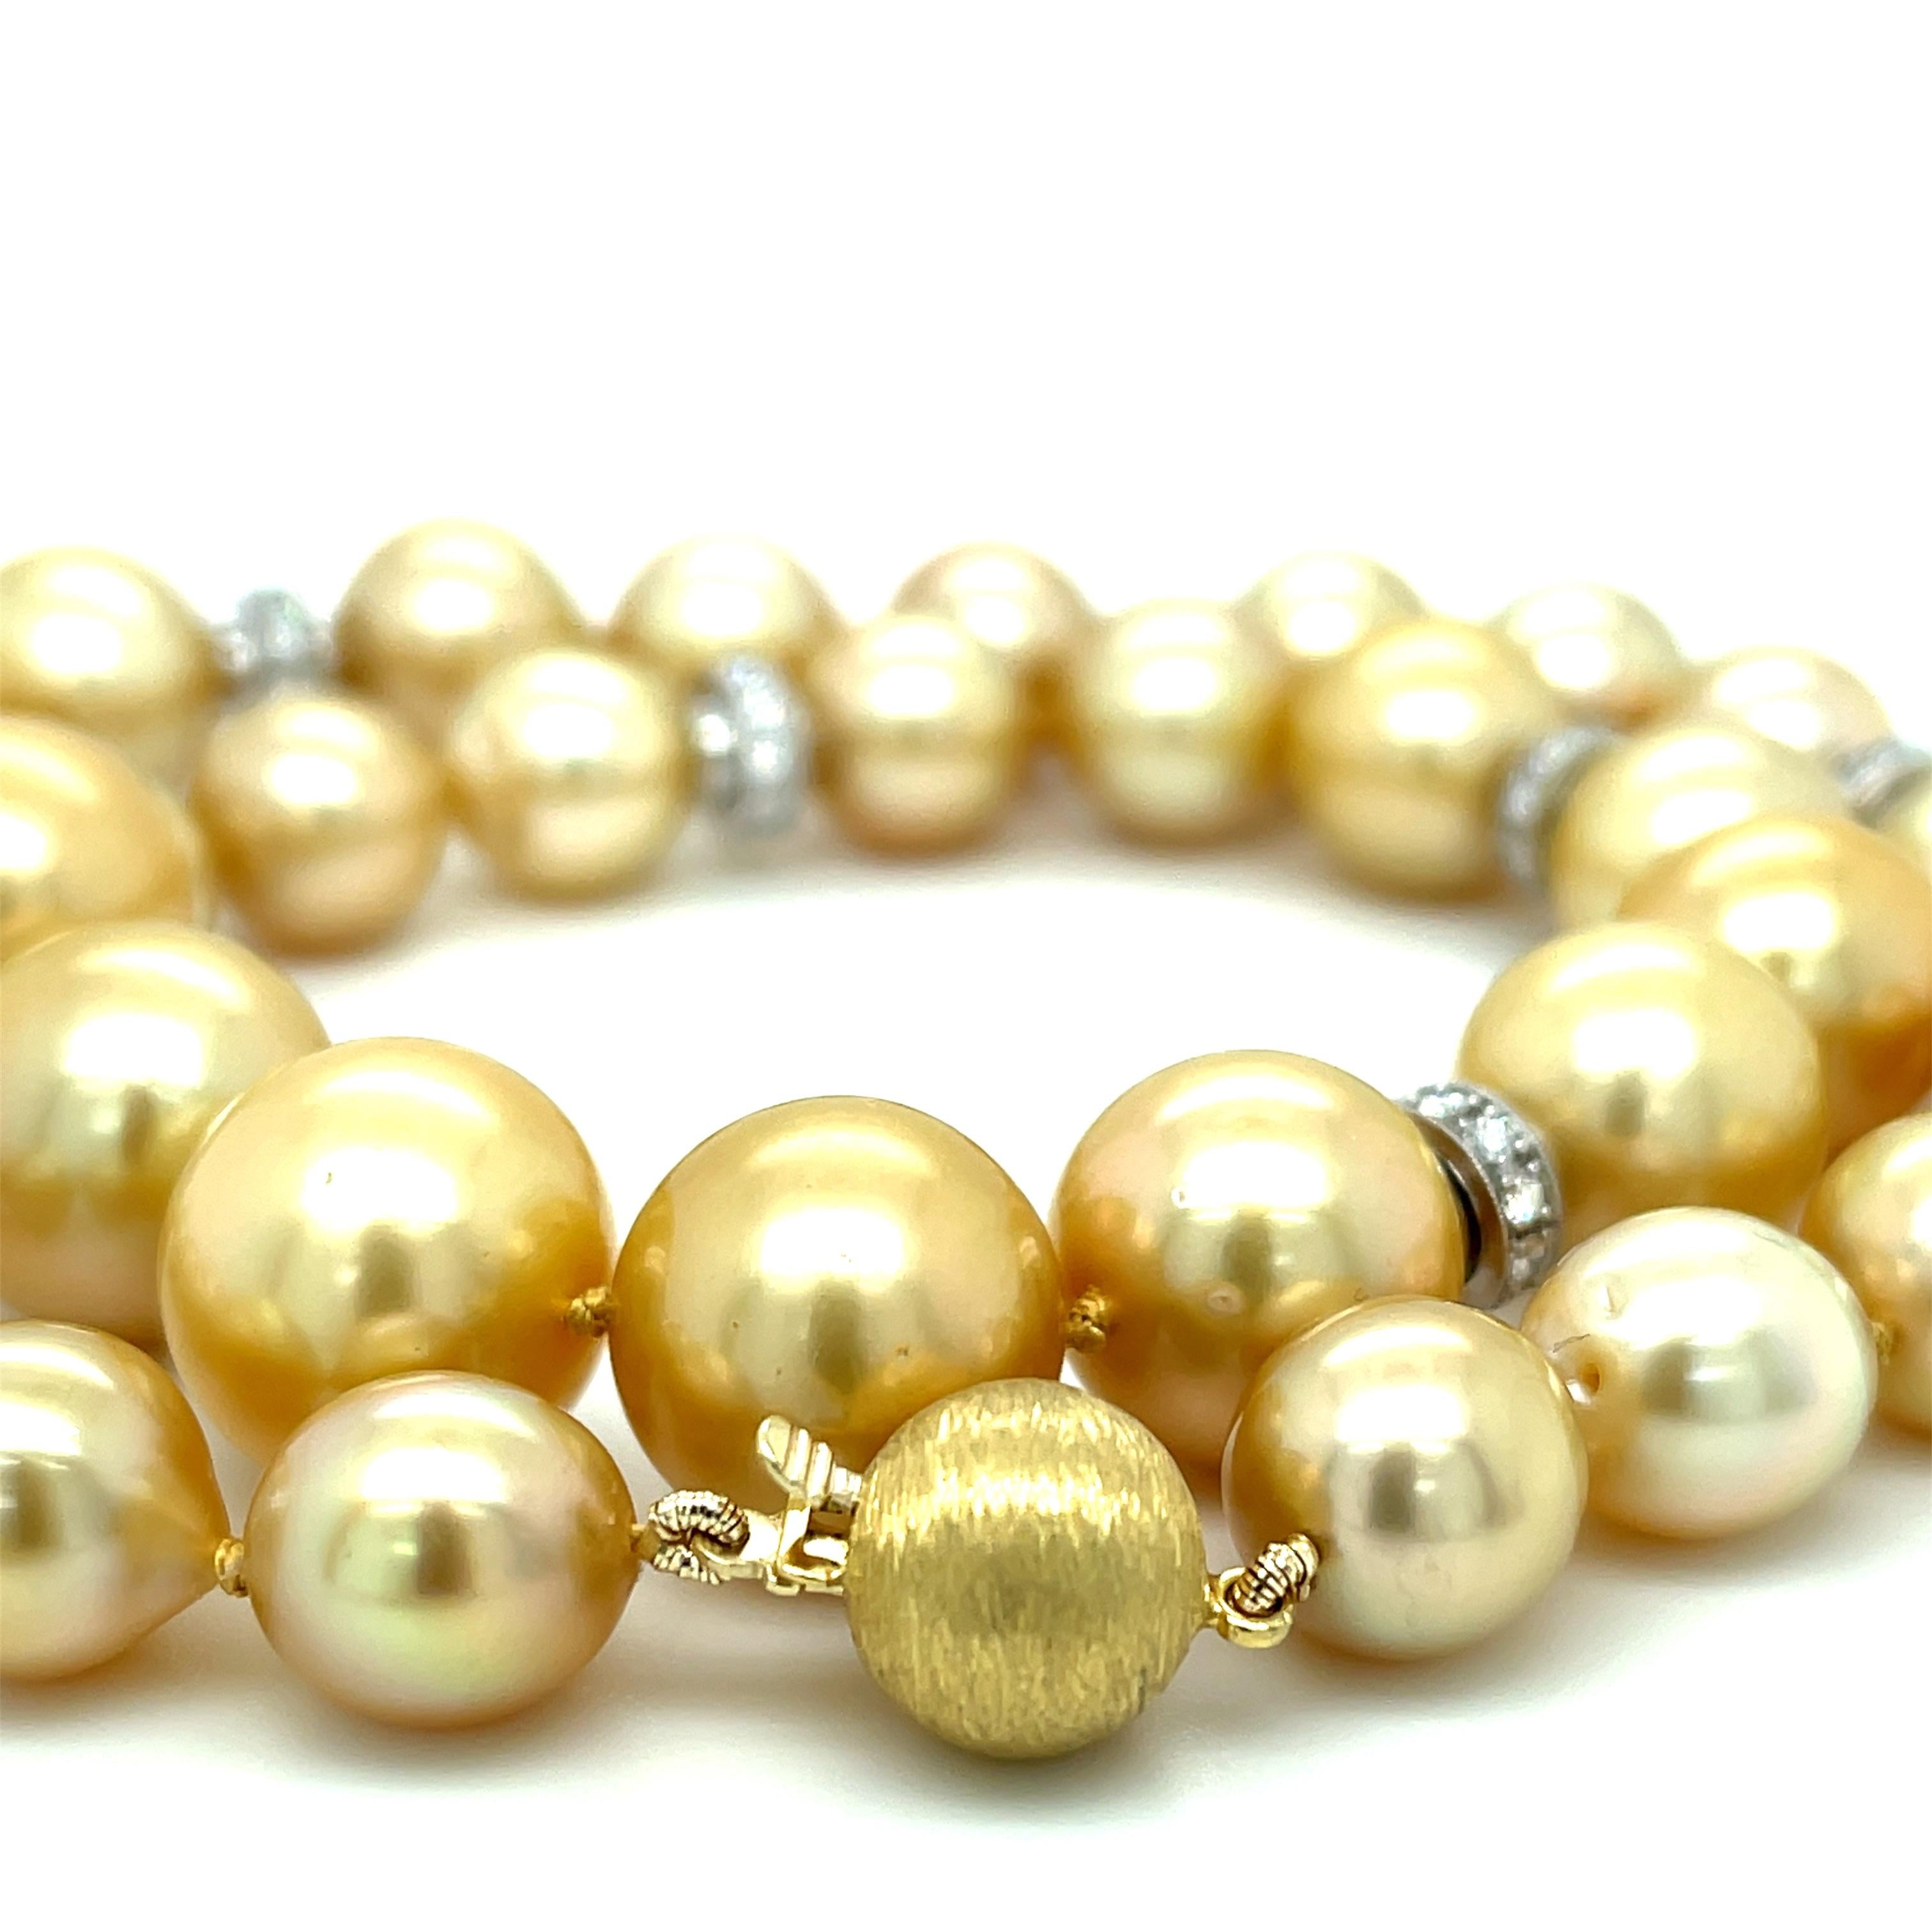 Ce magnifique collier de perles comprend trente-cinq perles dorées des mers du Sud, qui sont facilement reconnaissables et très prisées pour leur grande taille, leurs couleurs inhabituelles et leur magnifique lustre ! Il s'agit d'une collection